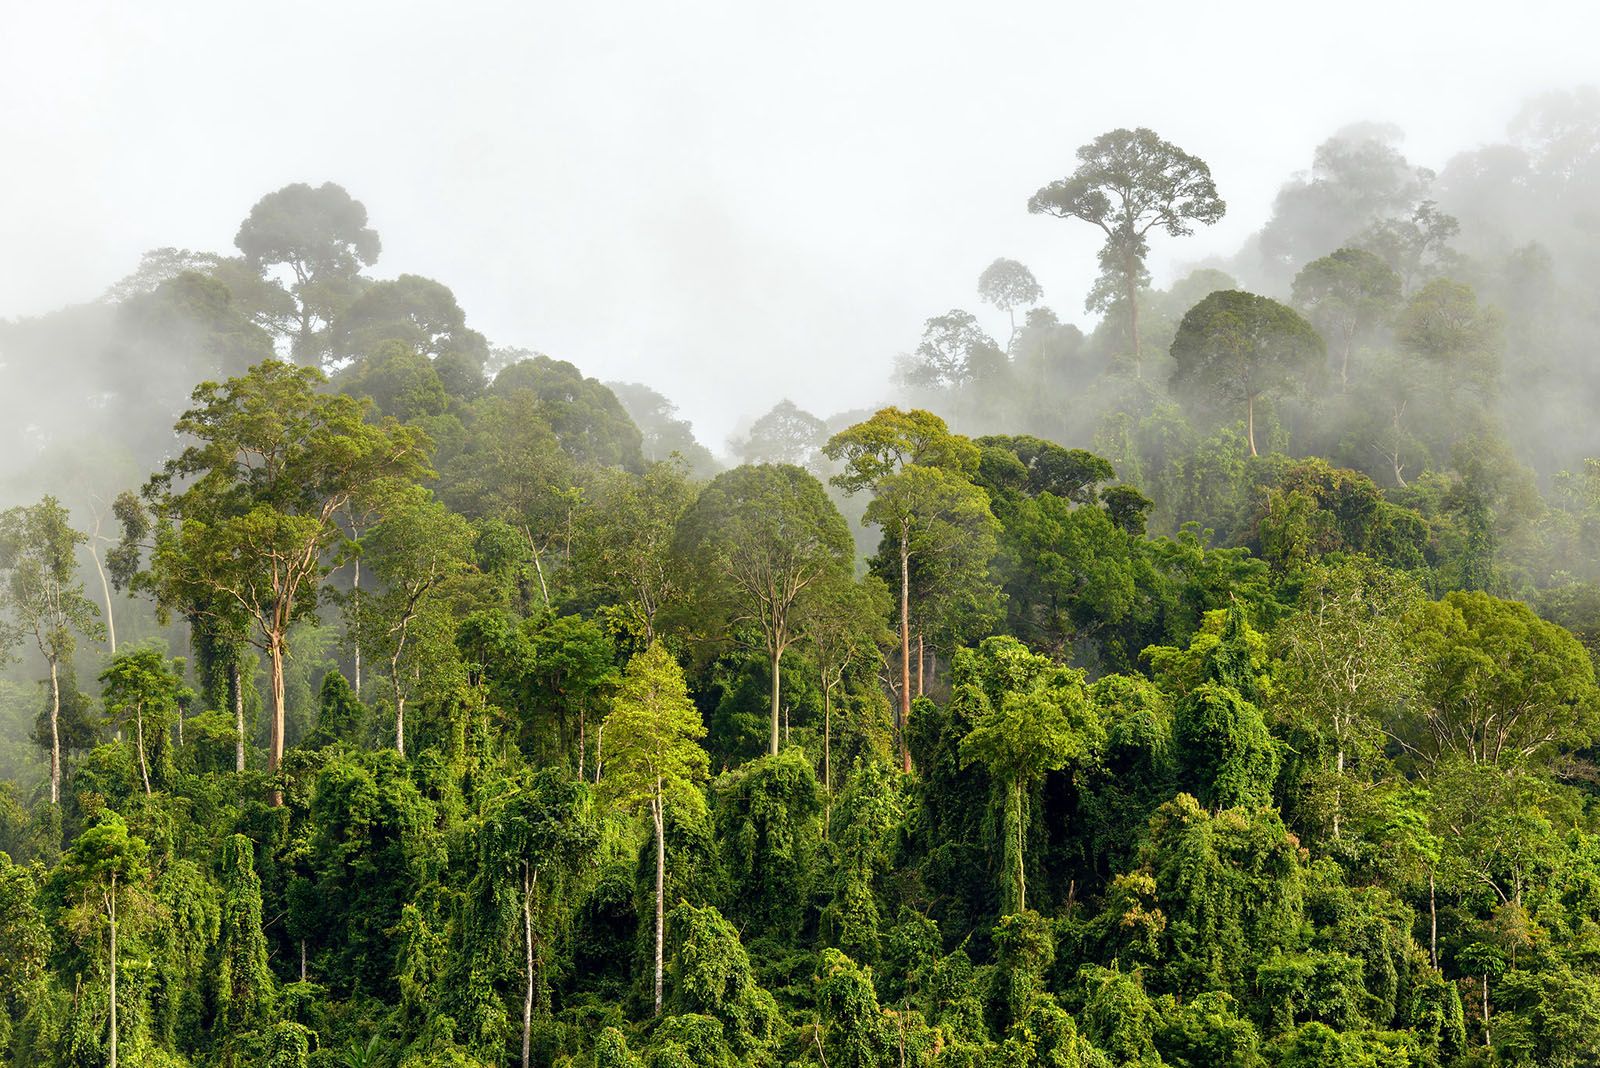 https://www.rainforest-alliance.org/wp-content/uploads/2019/11/tambopata-rainforest-fullsize.jpg.optimal.jpg